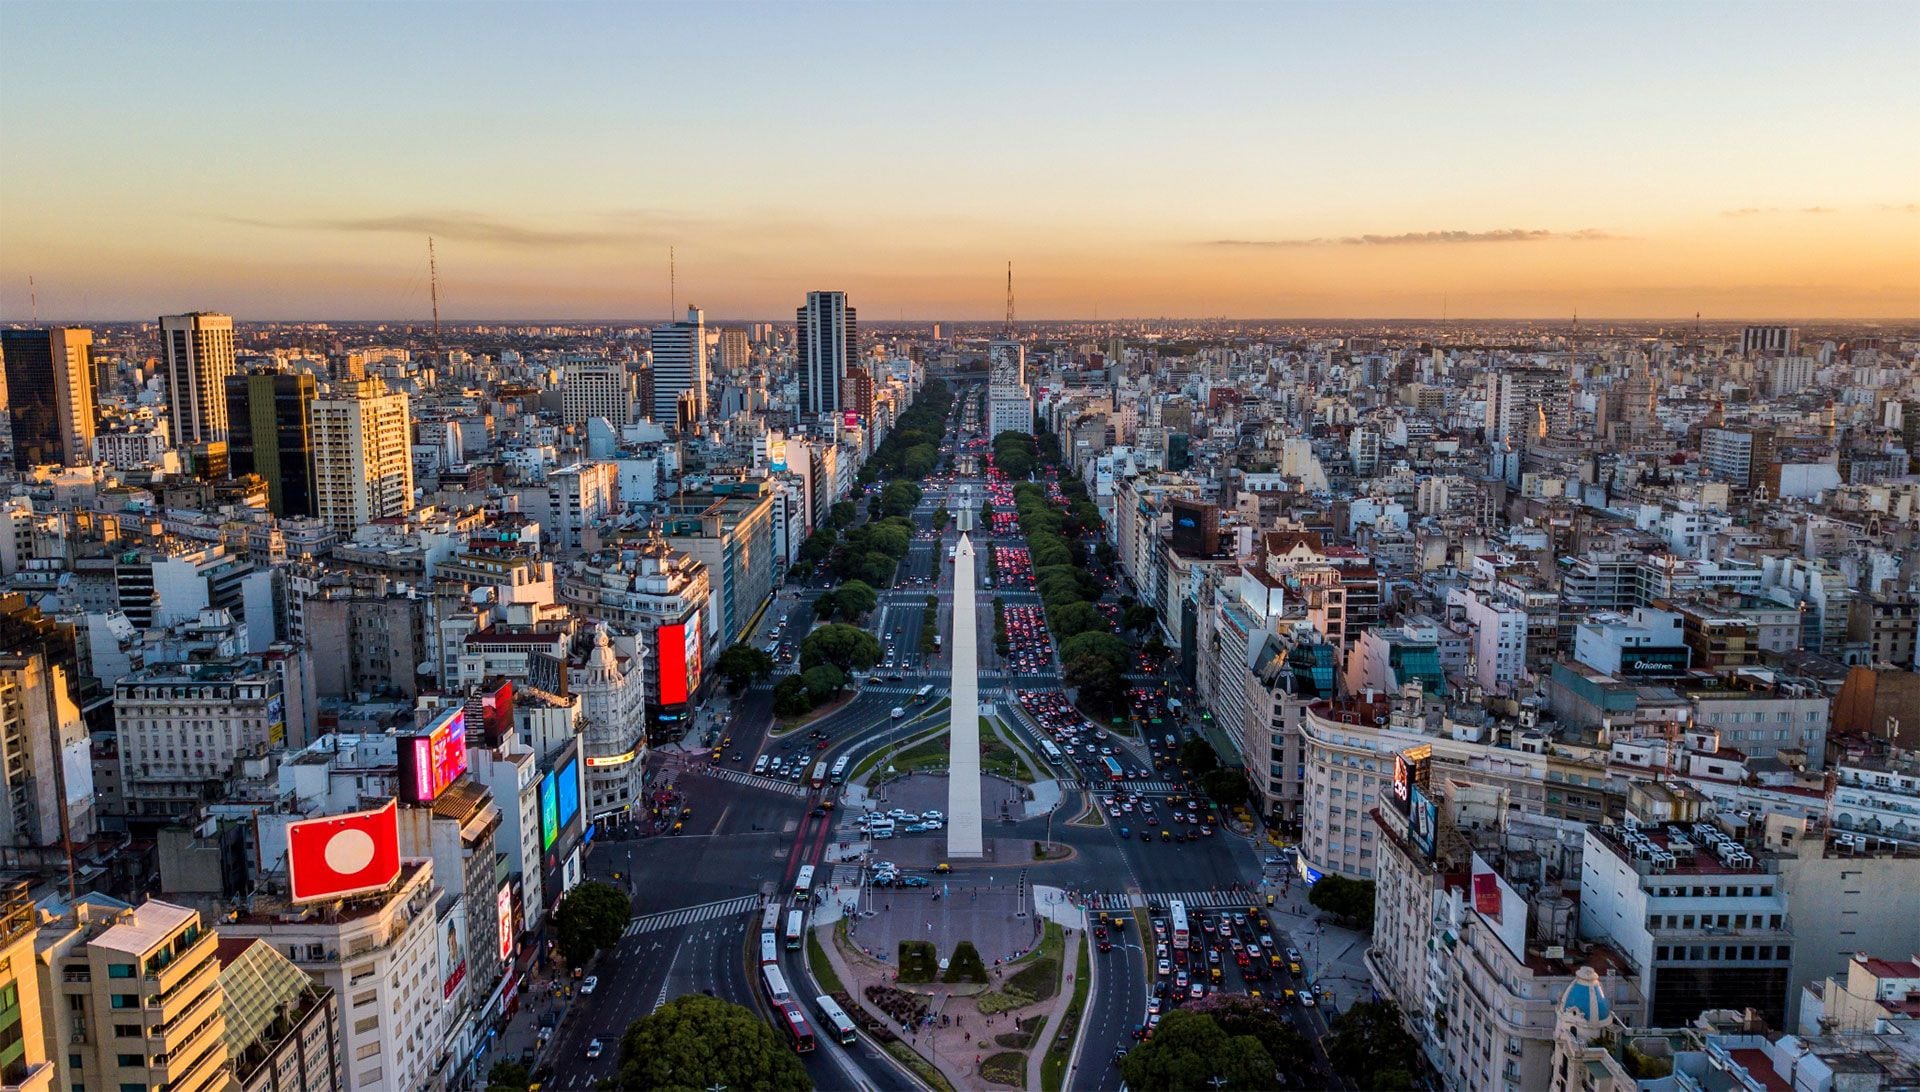 Ciudad De Buenos Aires - Obelisco - avenida 9 de julio